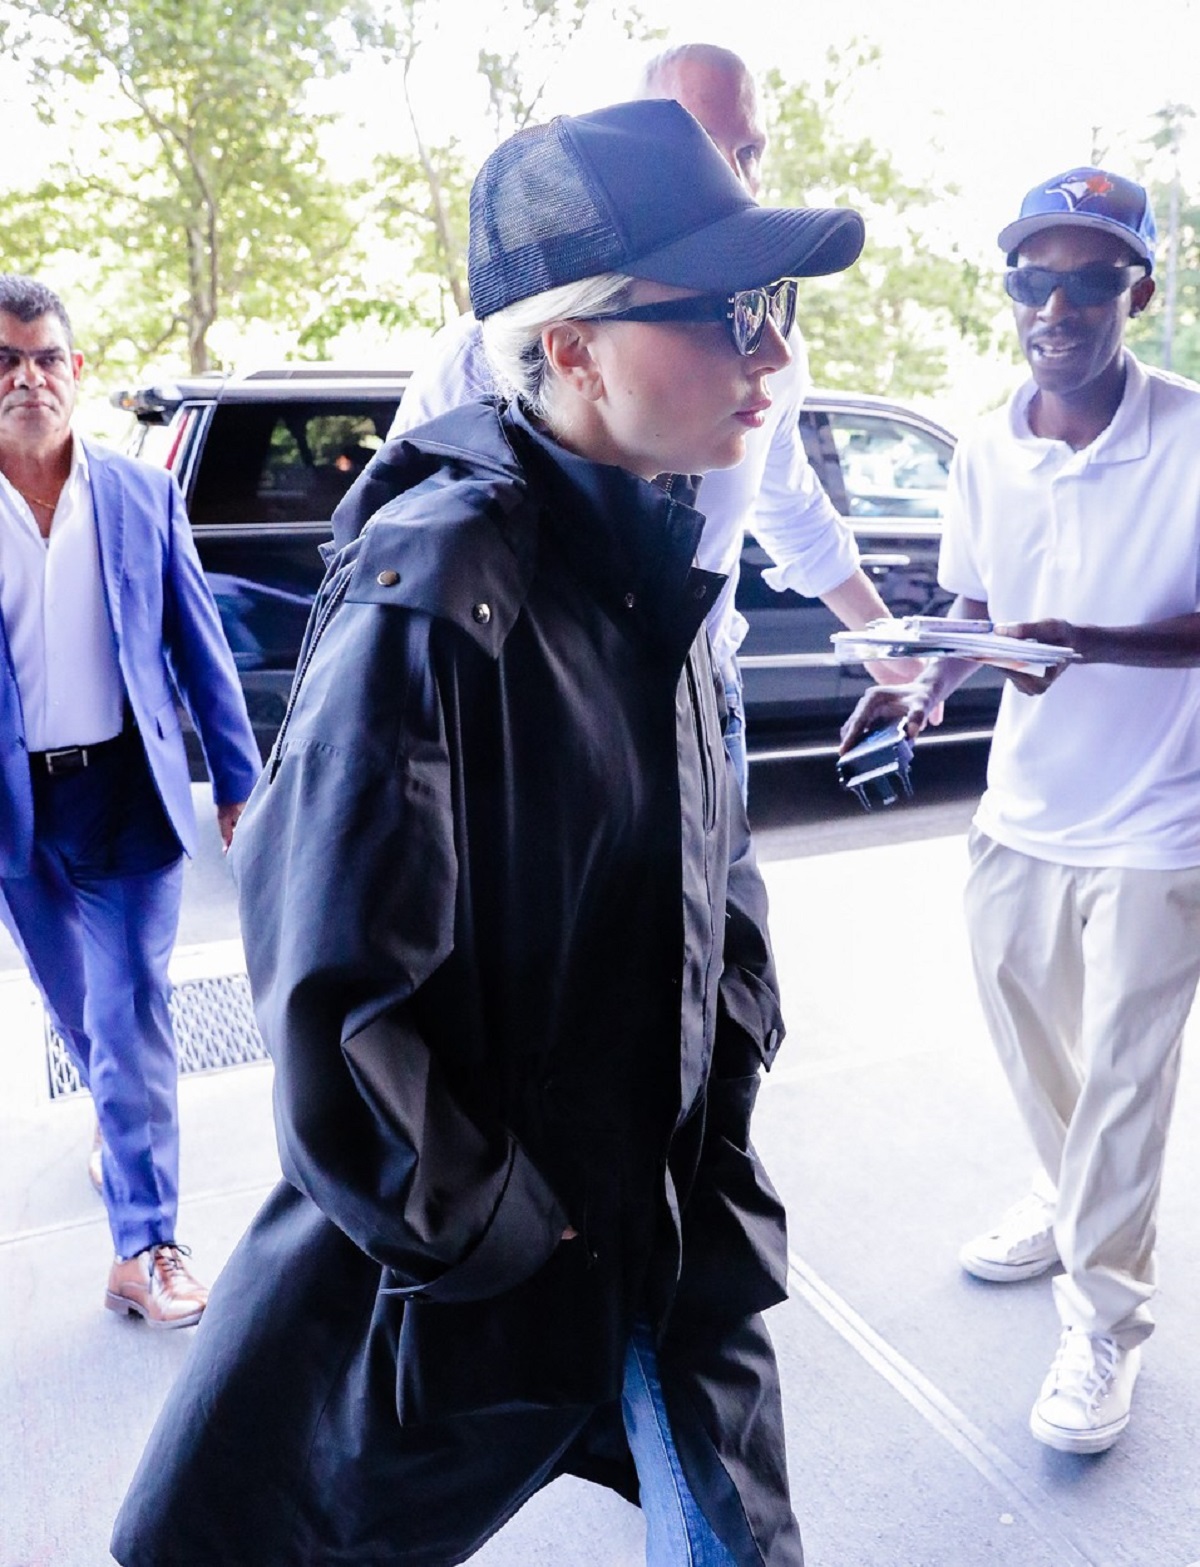 Lady Gaga a purtat un palton negru pe străzile din New York